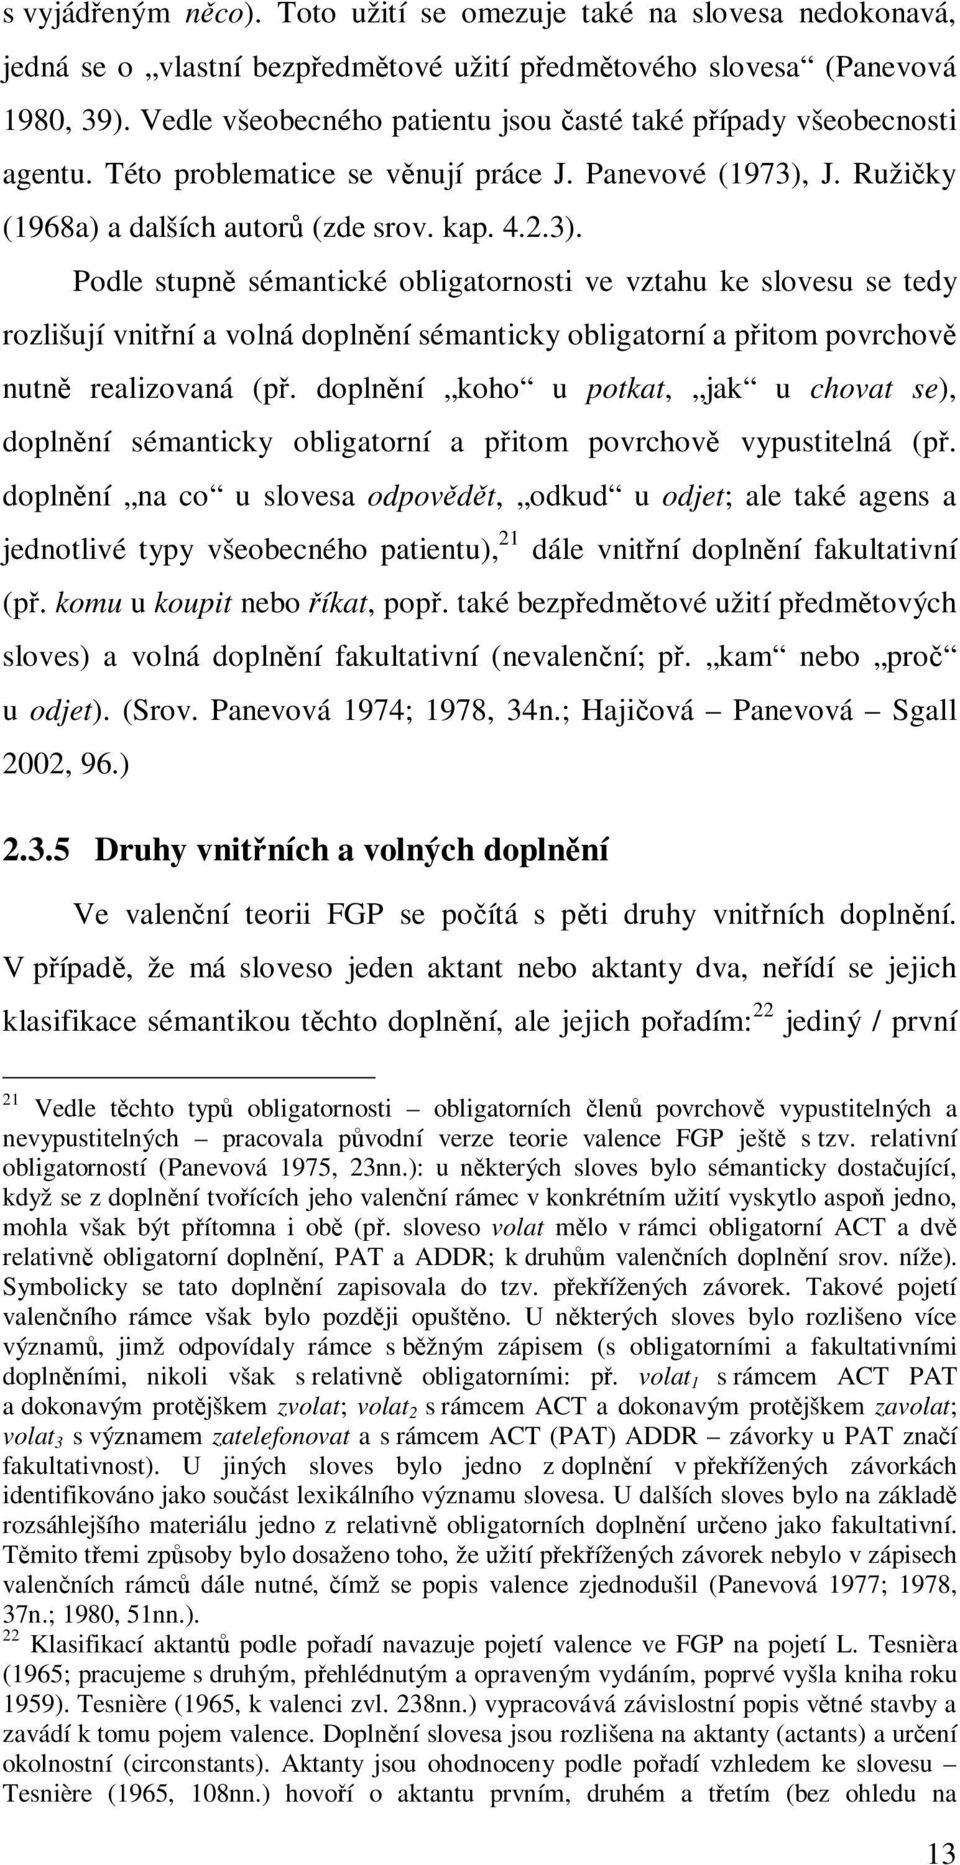 J. Ružičky (1968a) a dalších autorů (zde srov. kap. 4.2.3).